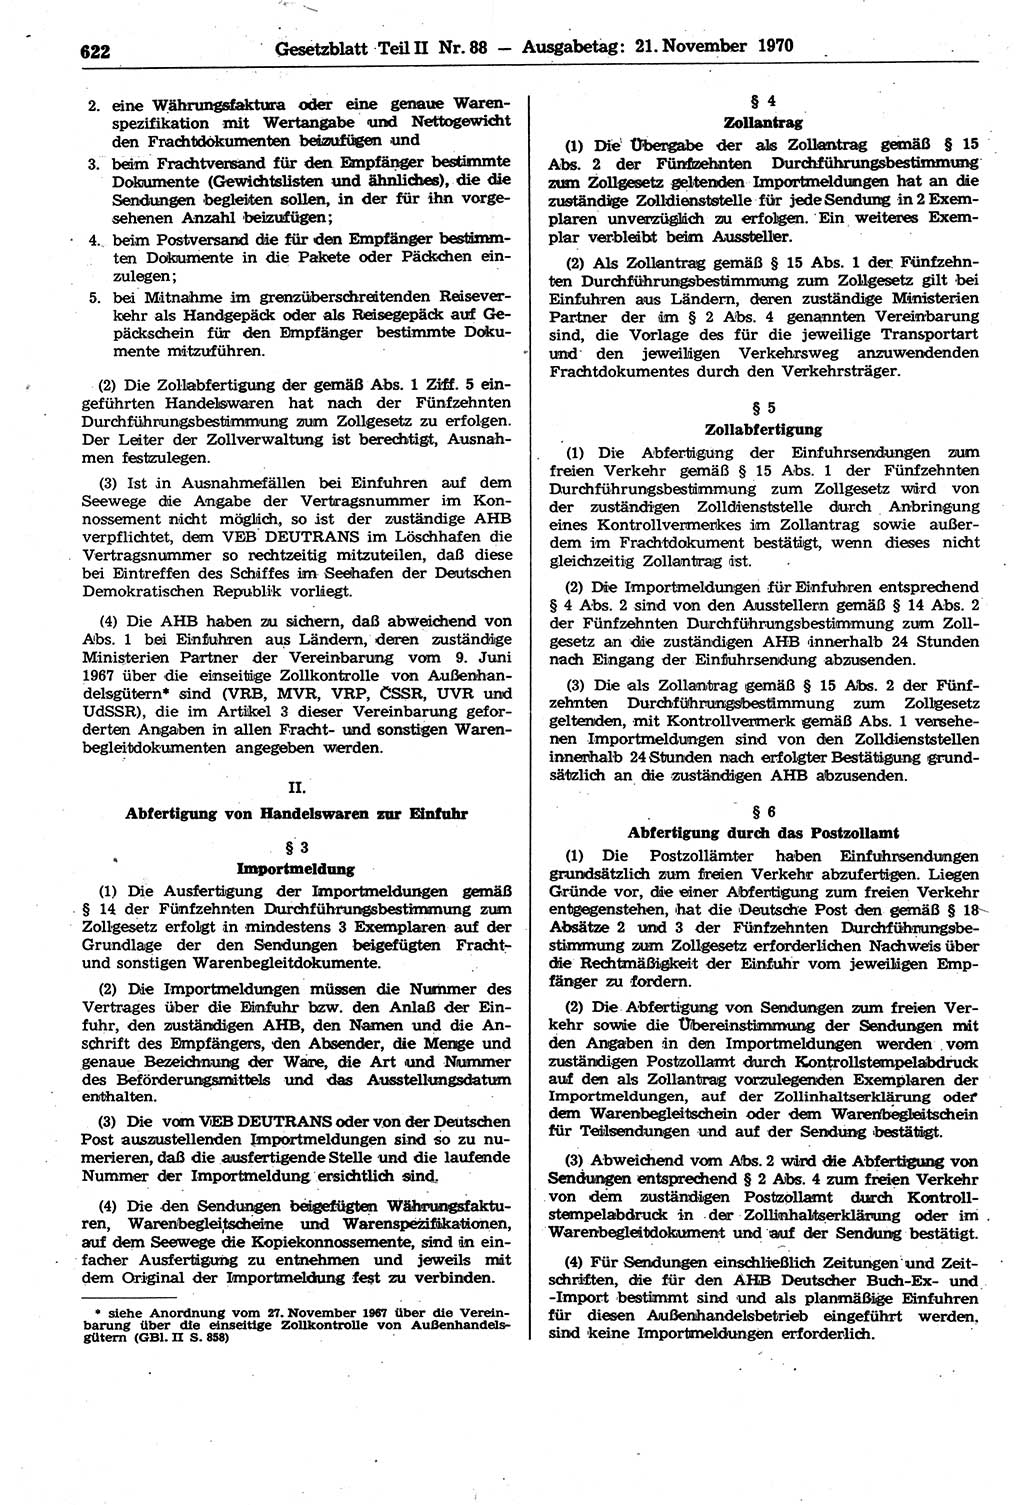 Gesetzblatt (GBl.) der Deutschen Demokratischen Republik (DDR) Teil ⅠⅠ 1970, Seite 622 (GBl. DDR ⅠⅠ 1970, S. 622)